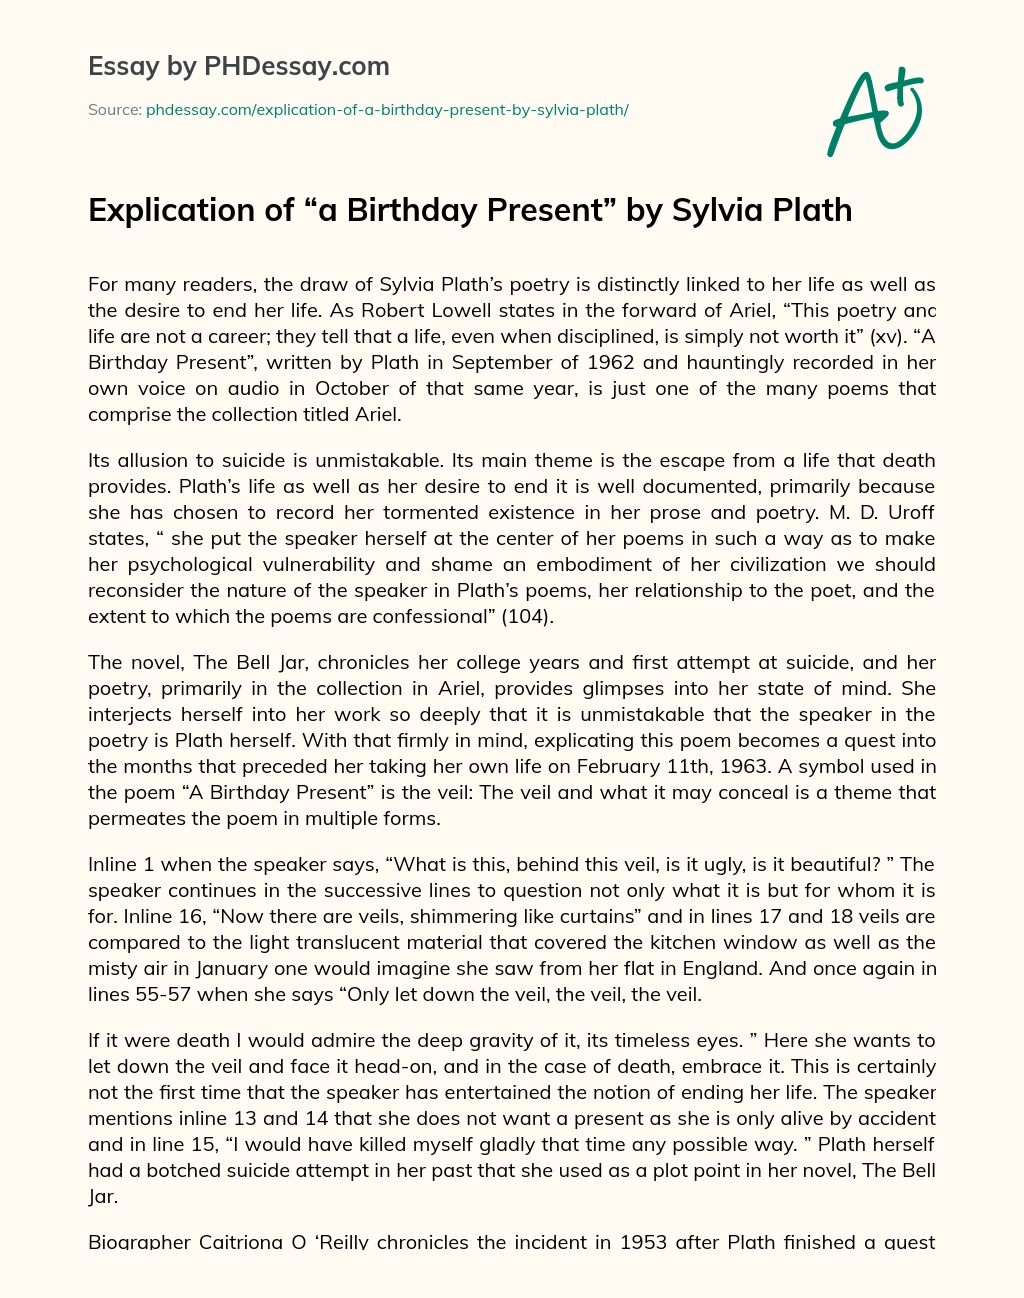 critical appreciation of ariel by sylvia plath